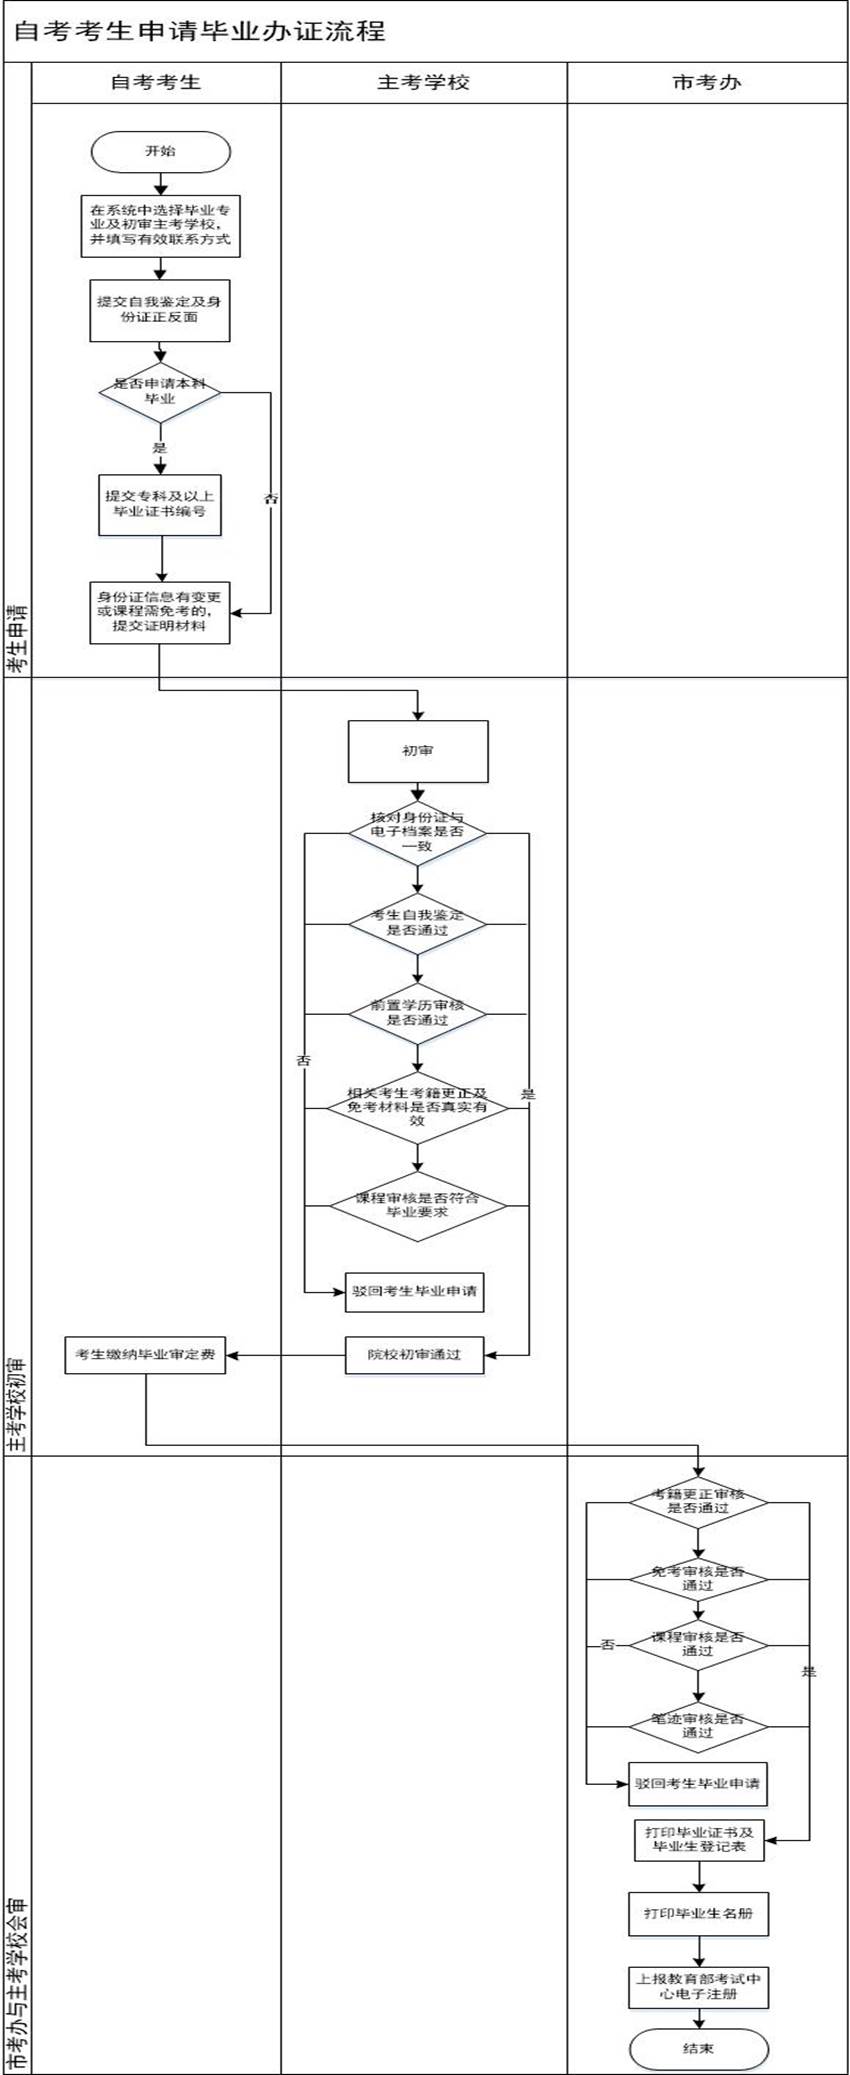 这是一张重庆自考毕业办理流程图